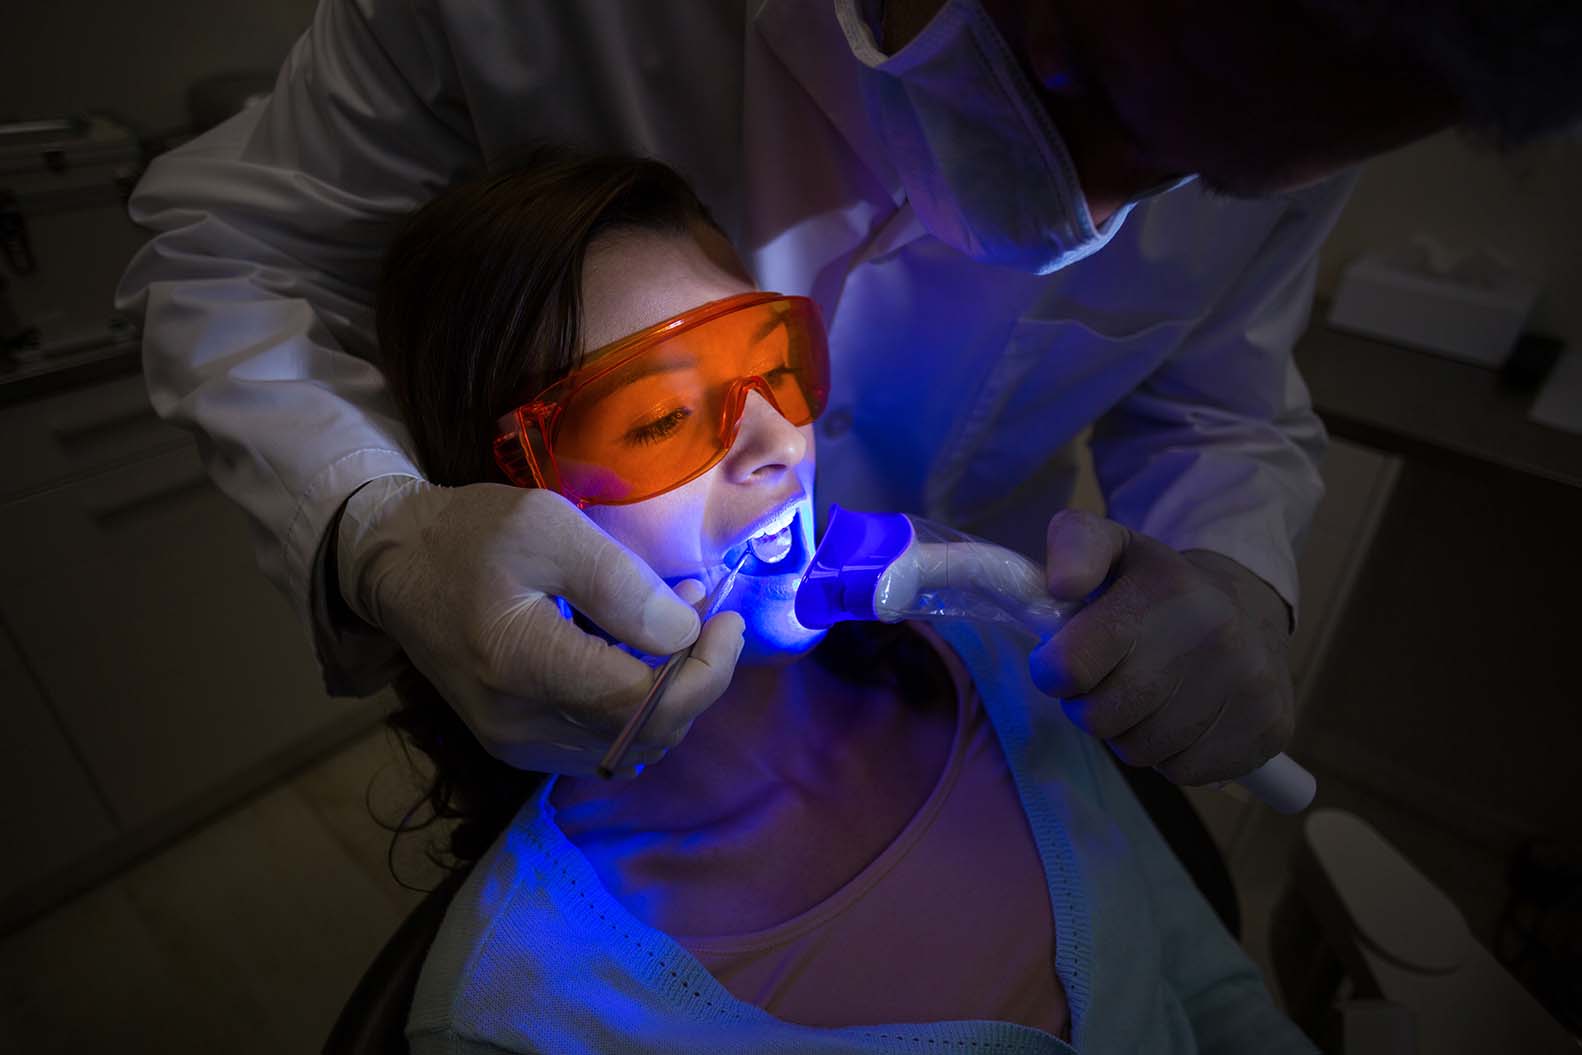 Laser dentistry